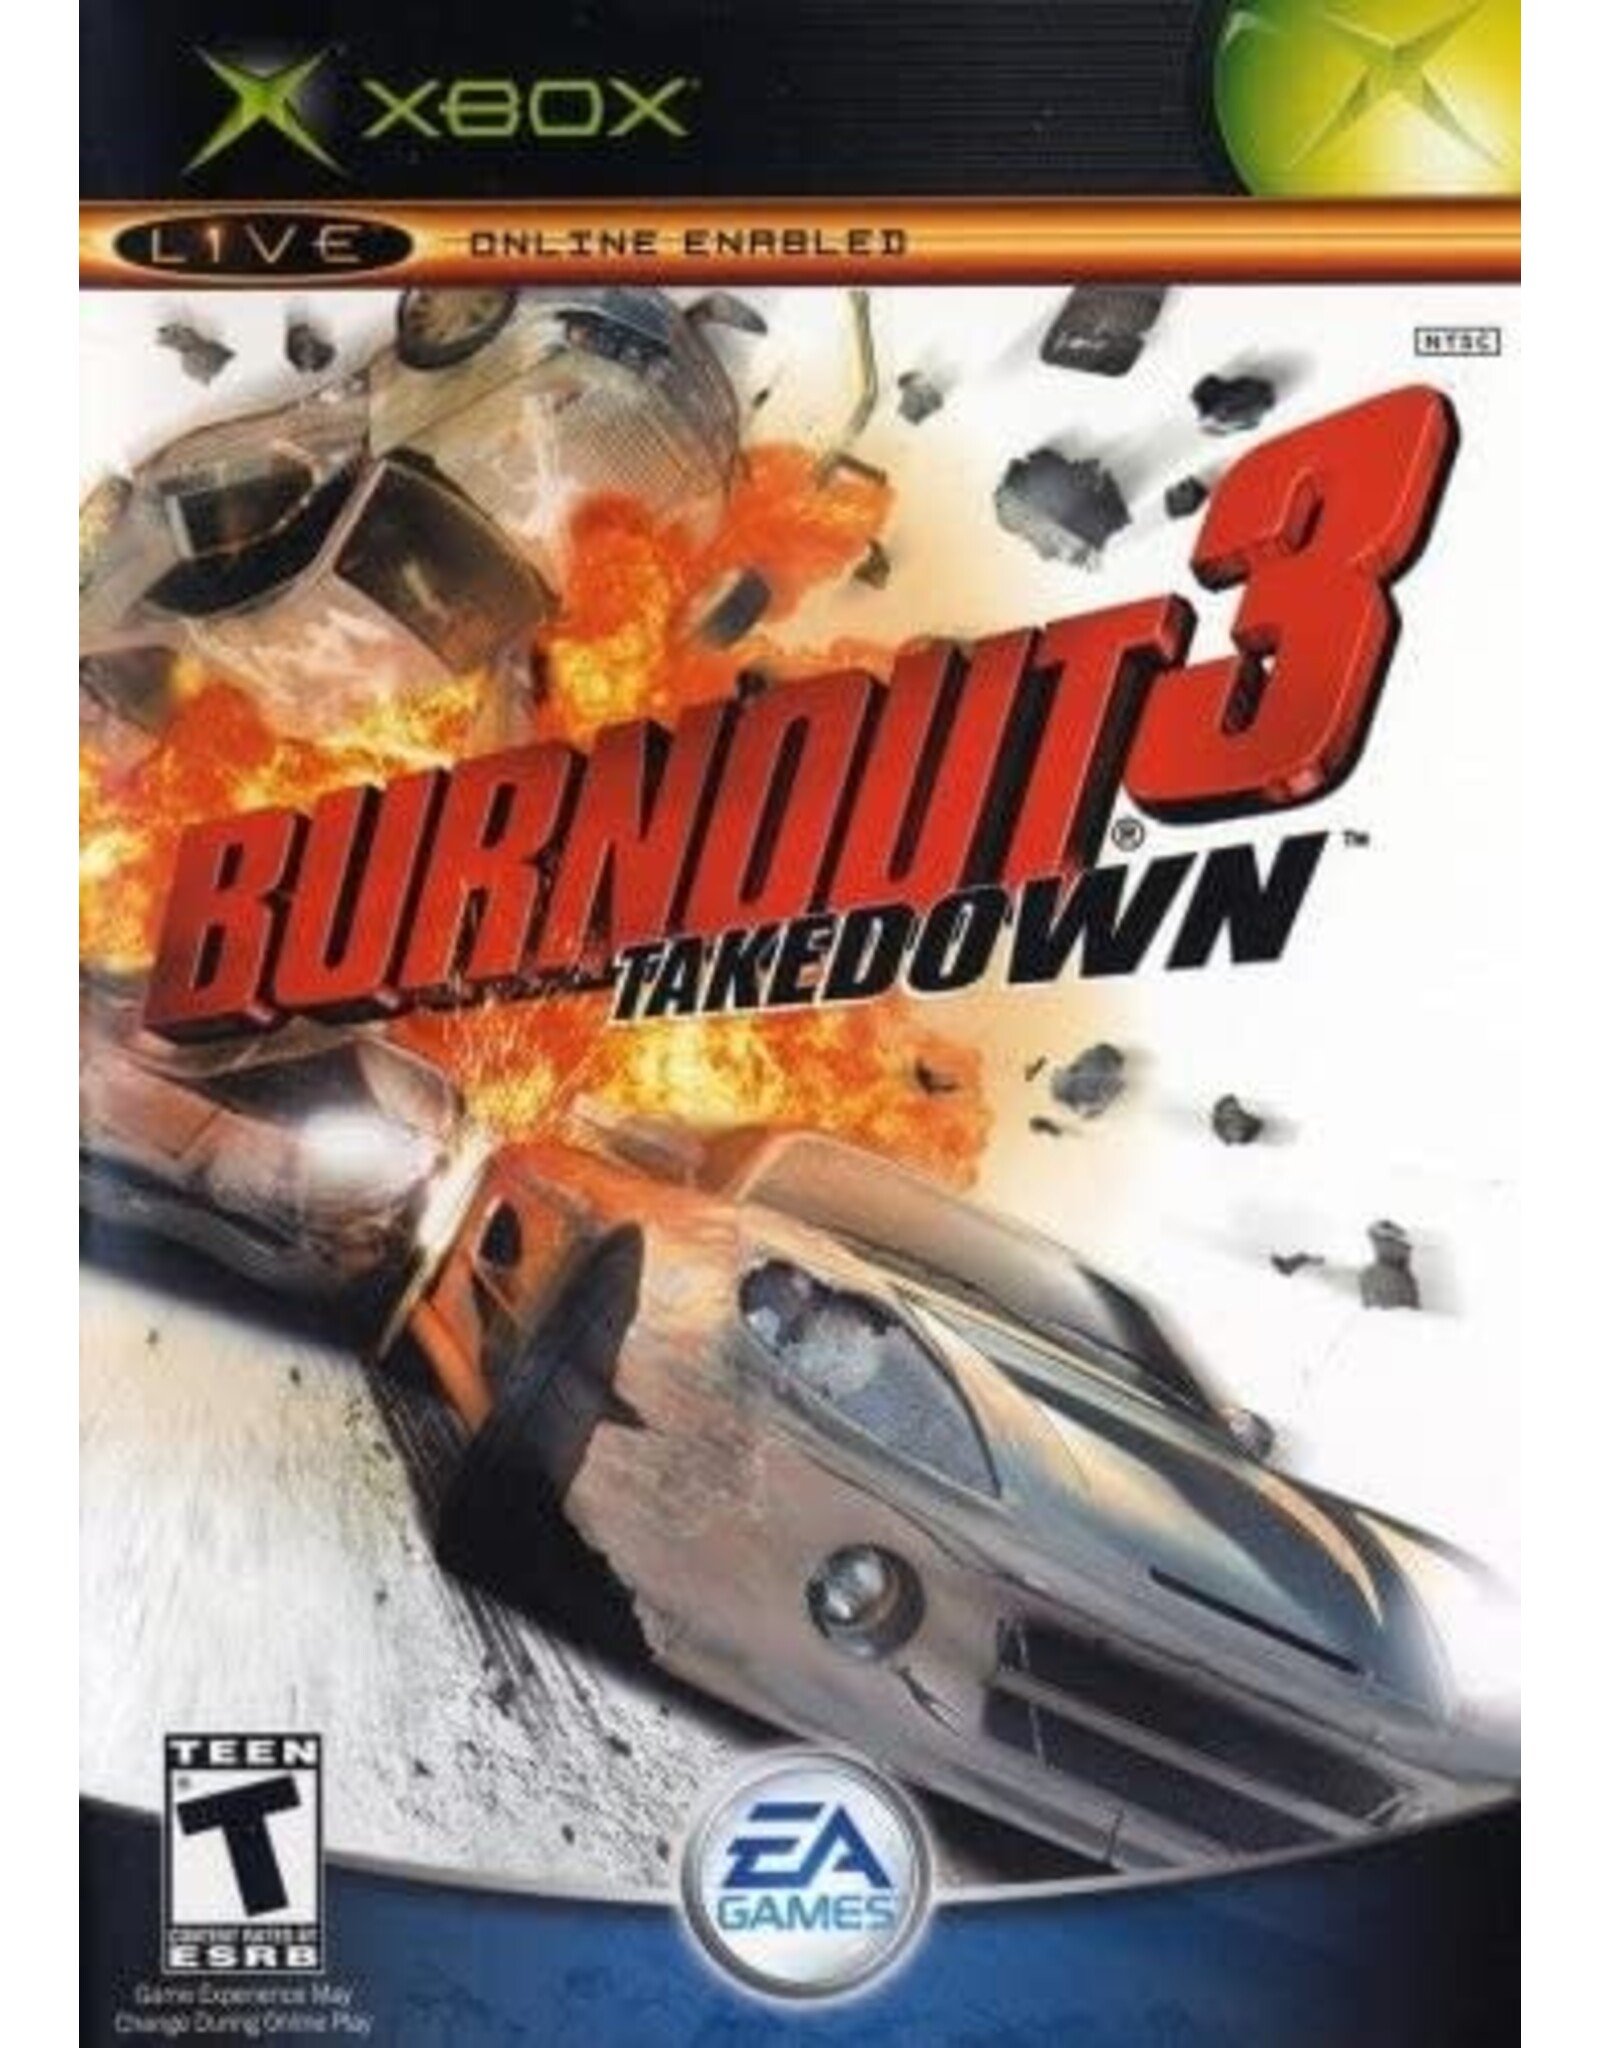 Xbox Burnout 3 Takedown (No Manual)